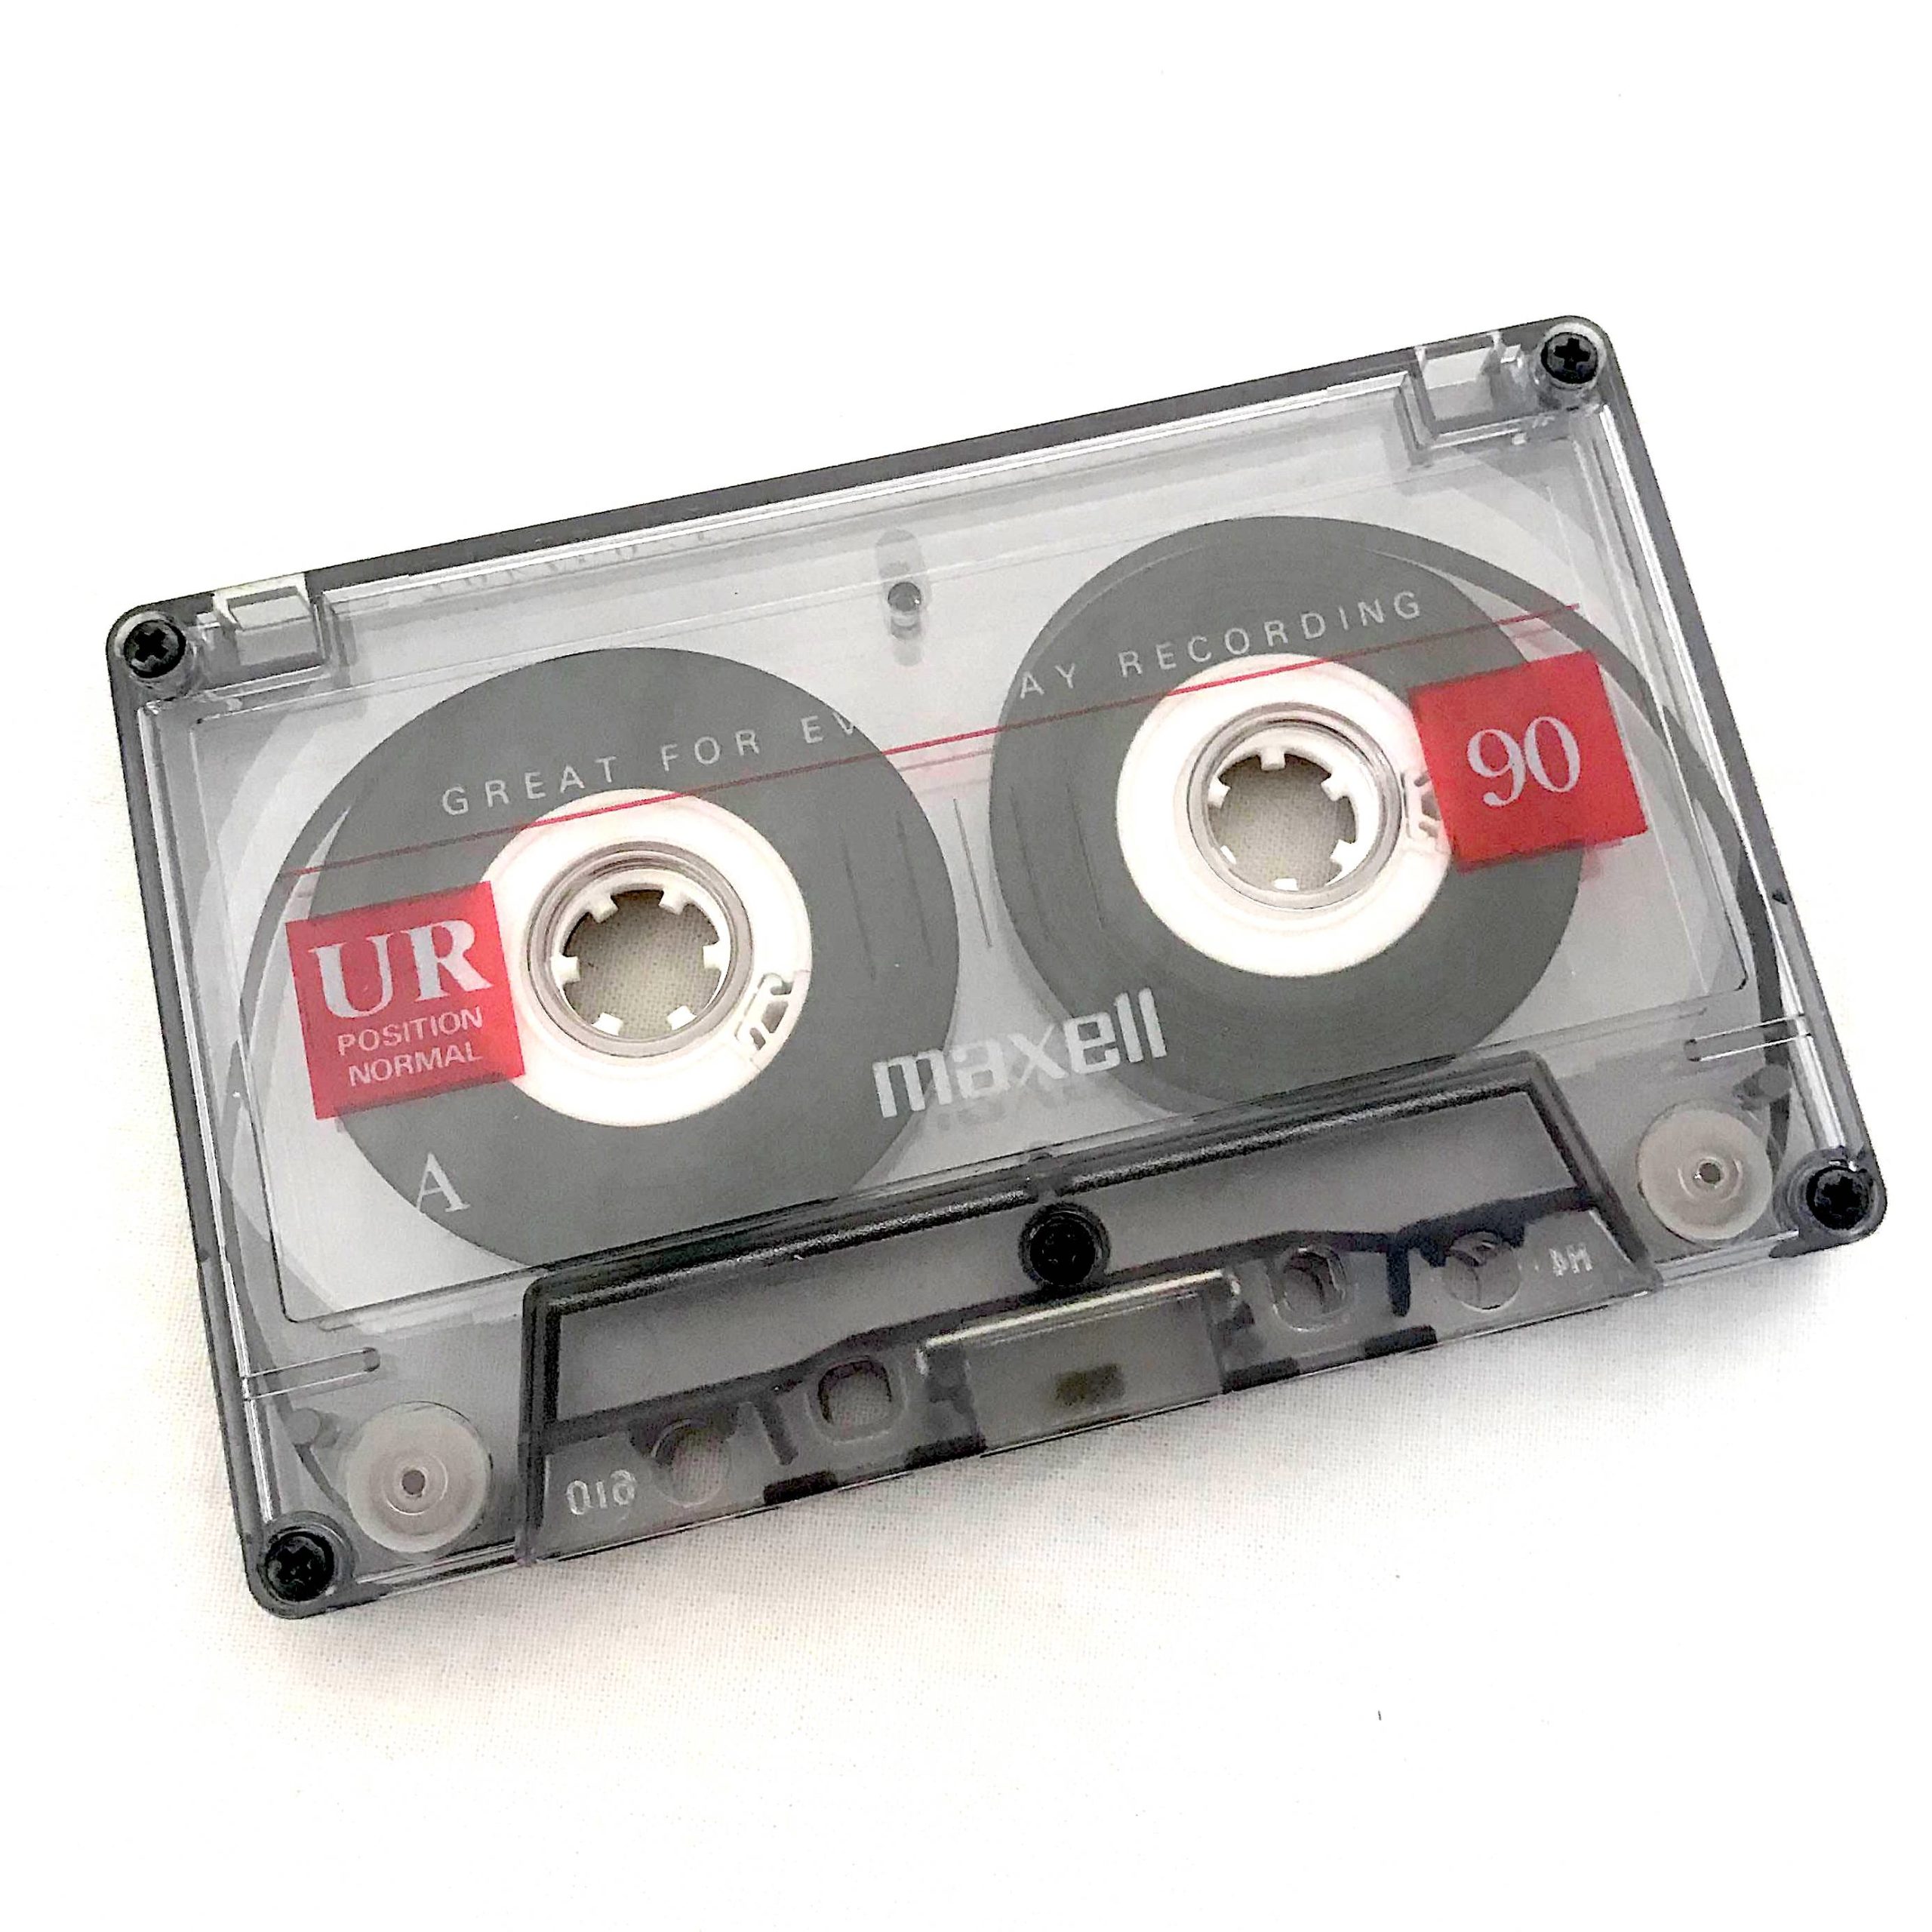 L'histoire des pochettes de musique : révolutions numériques des 90s - 00s